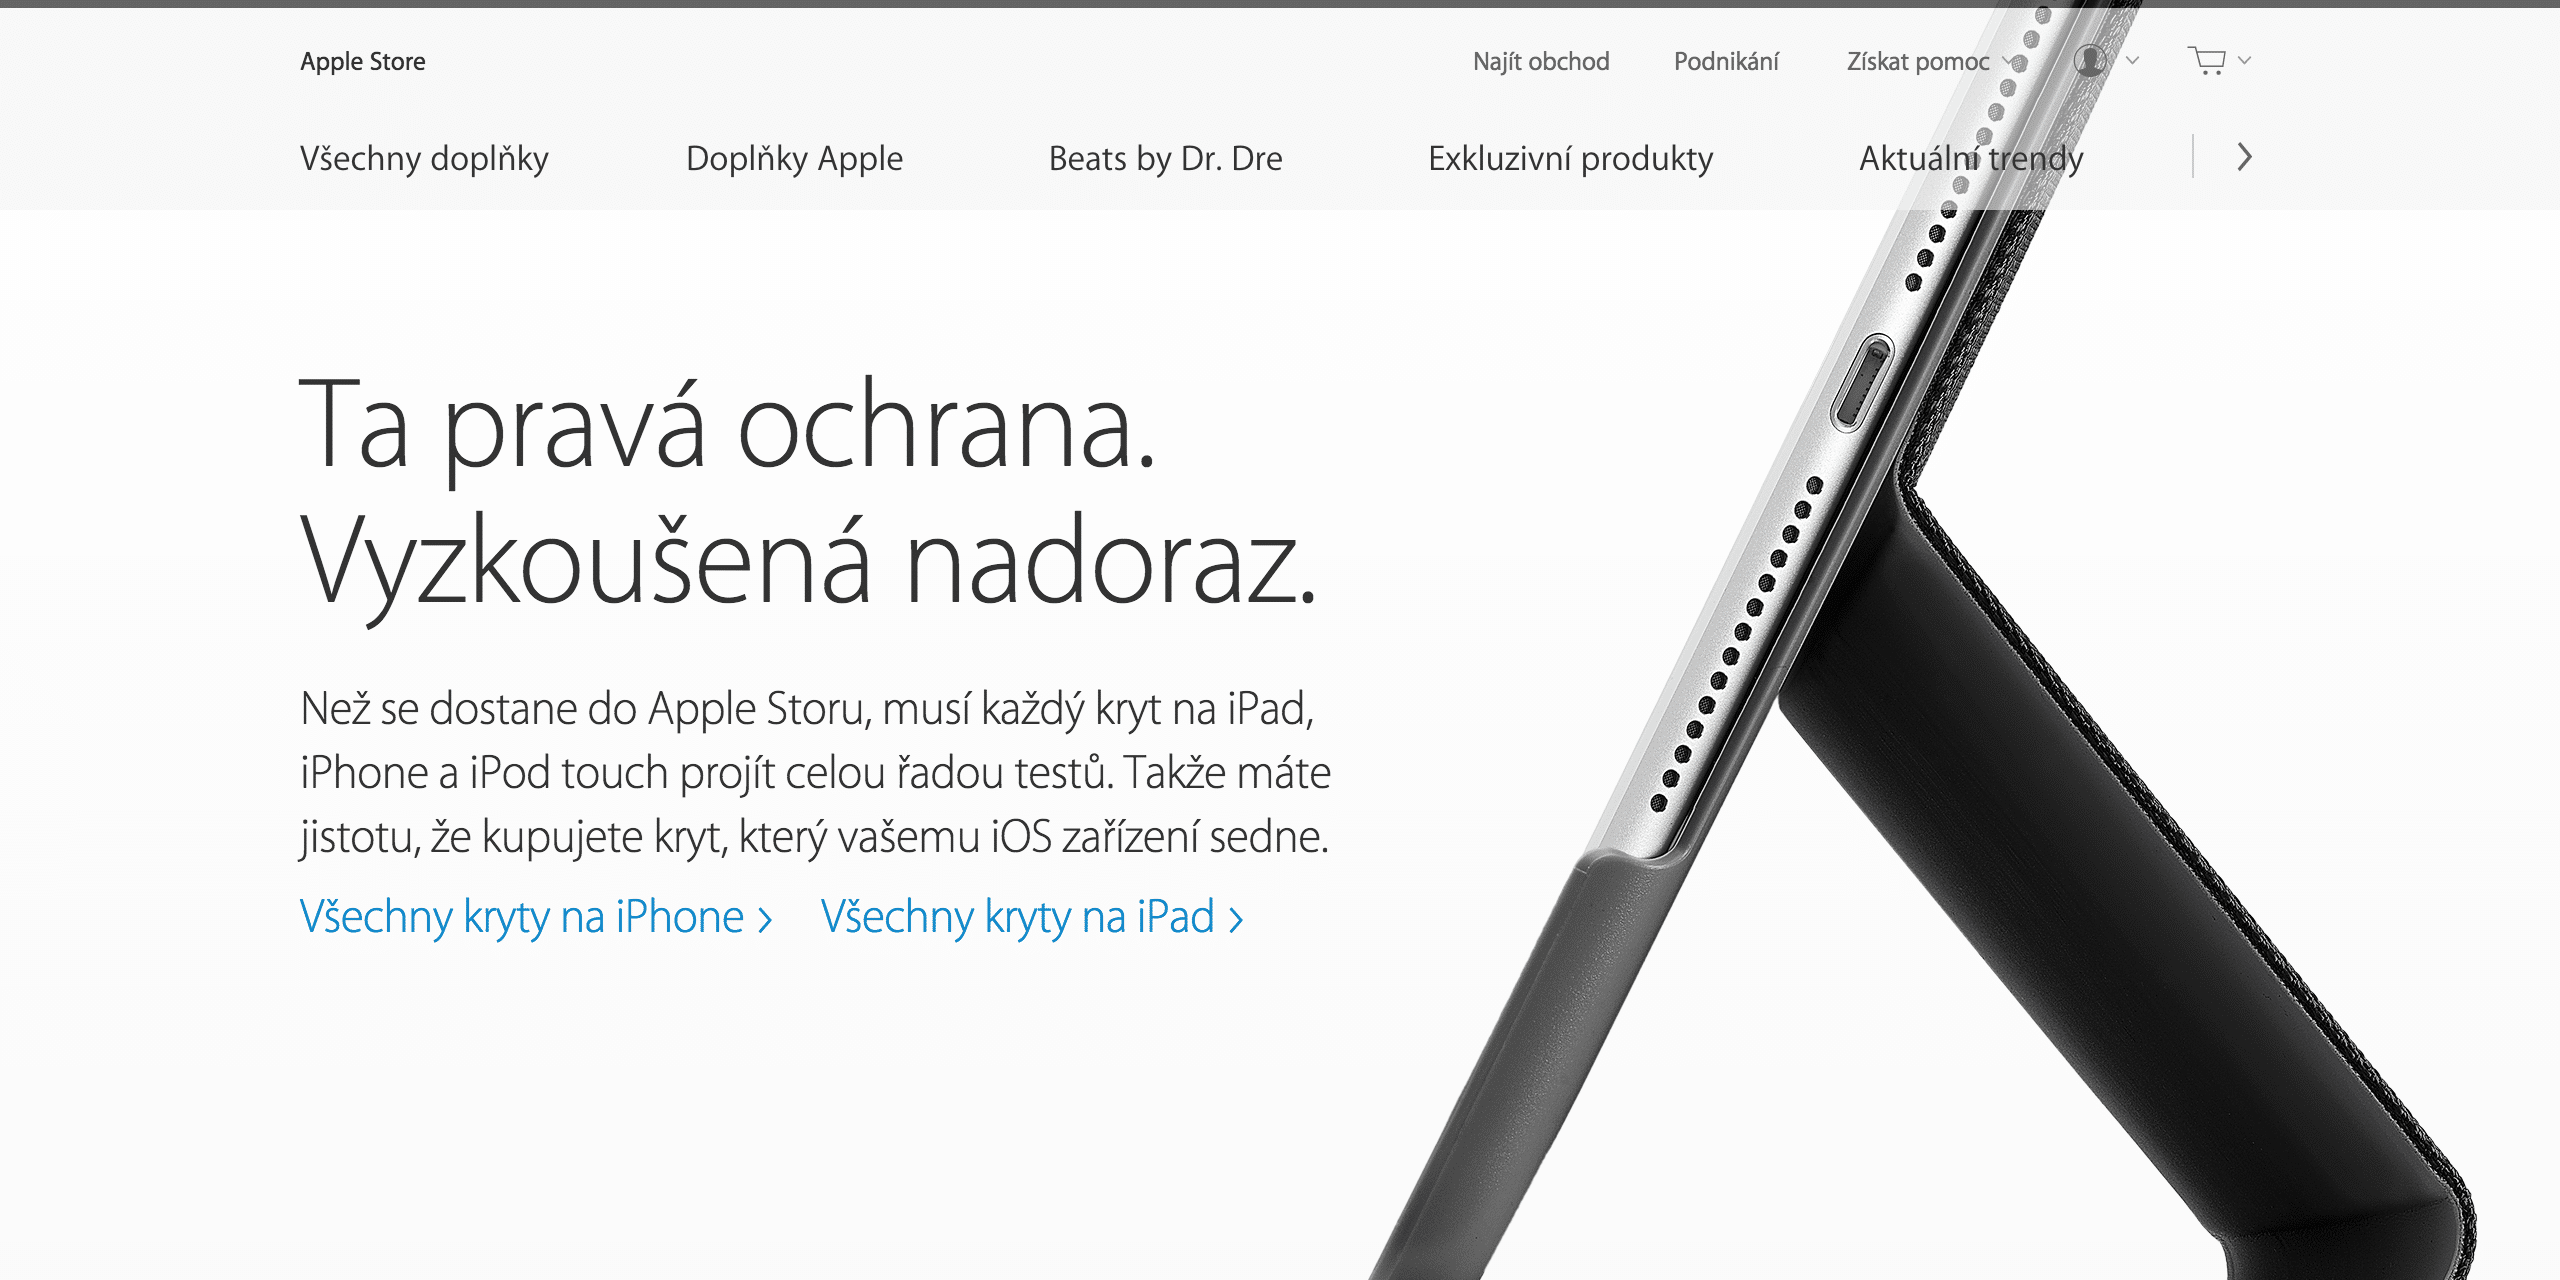 Apple Online Store - svetapple.sk